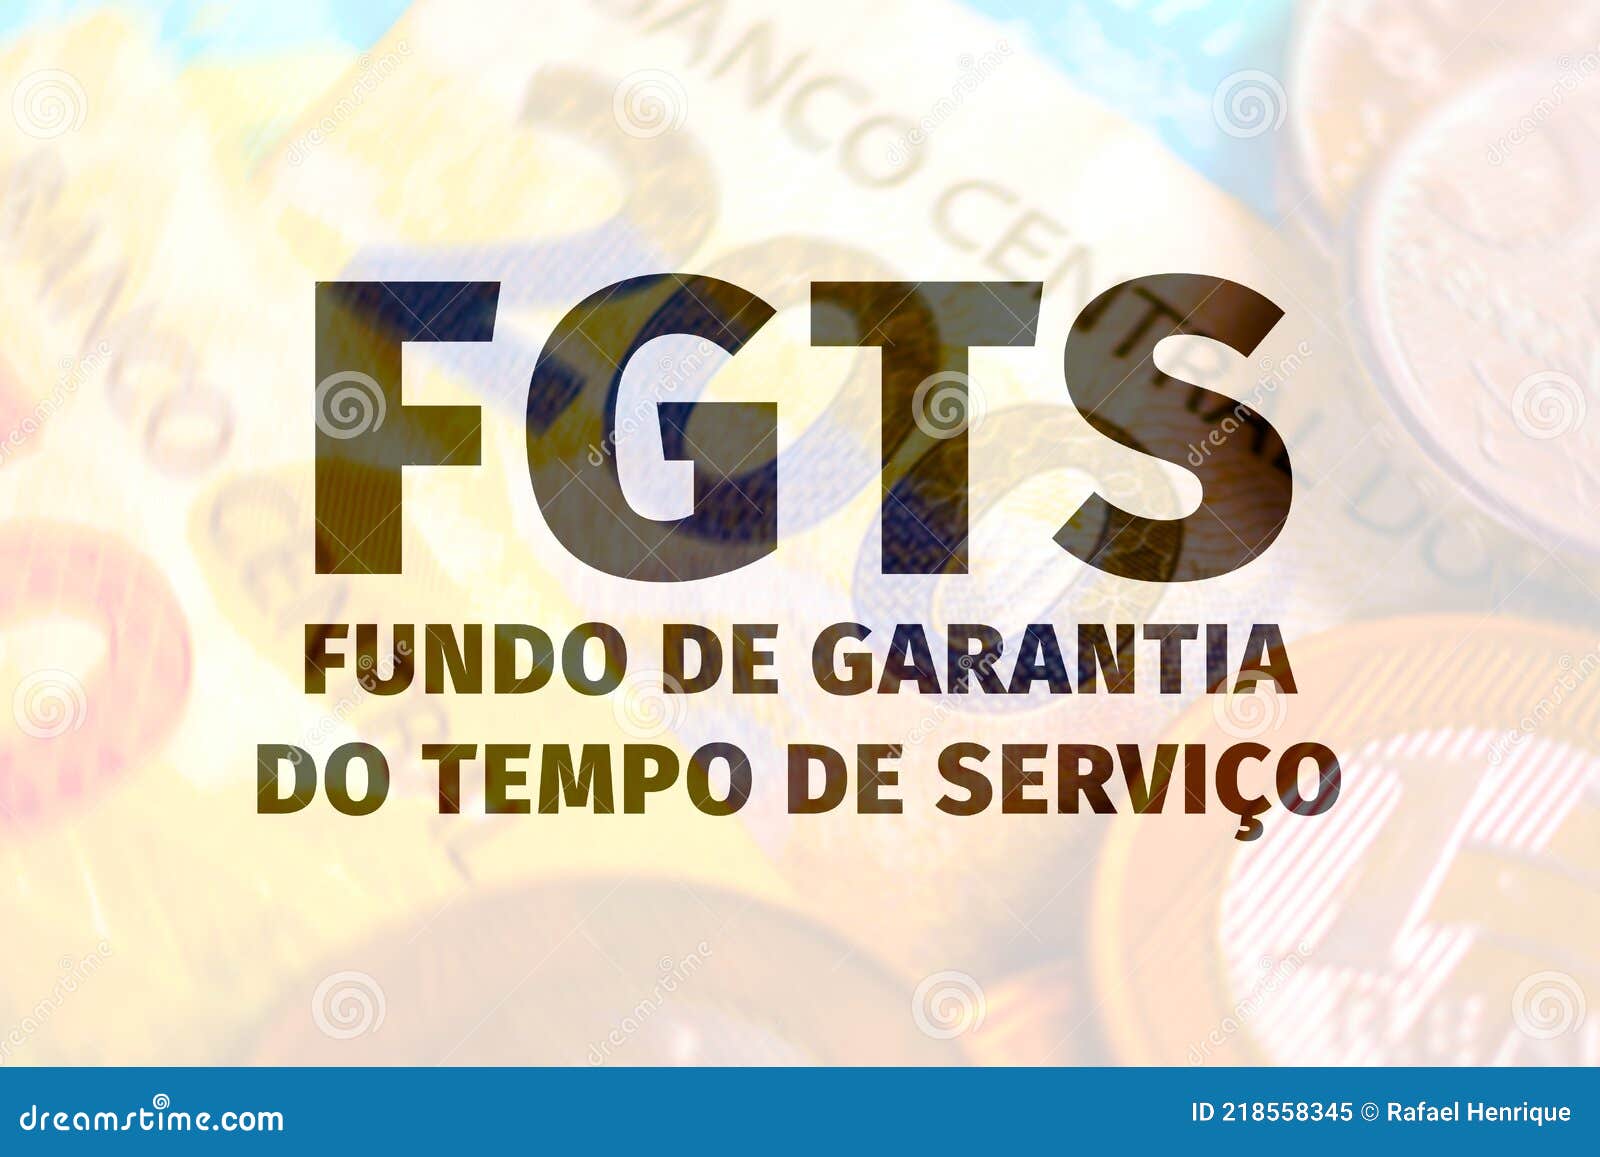 fgts, fundo de garantia do tempo de serviÃÂ§o. background text with money